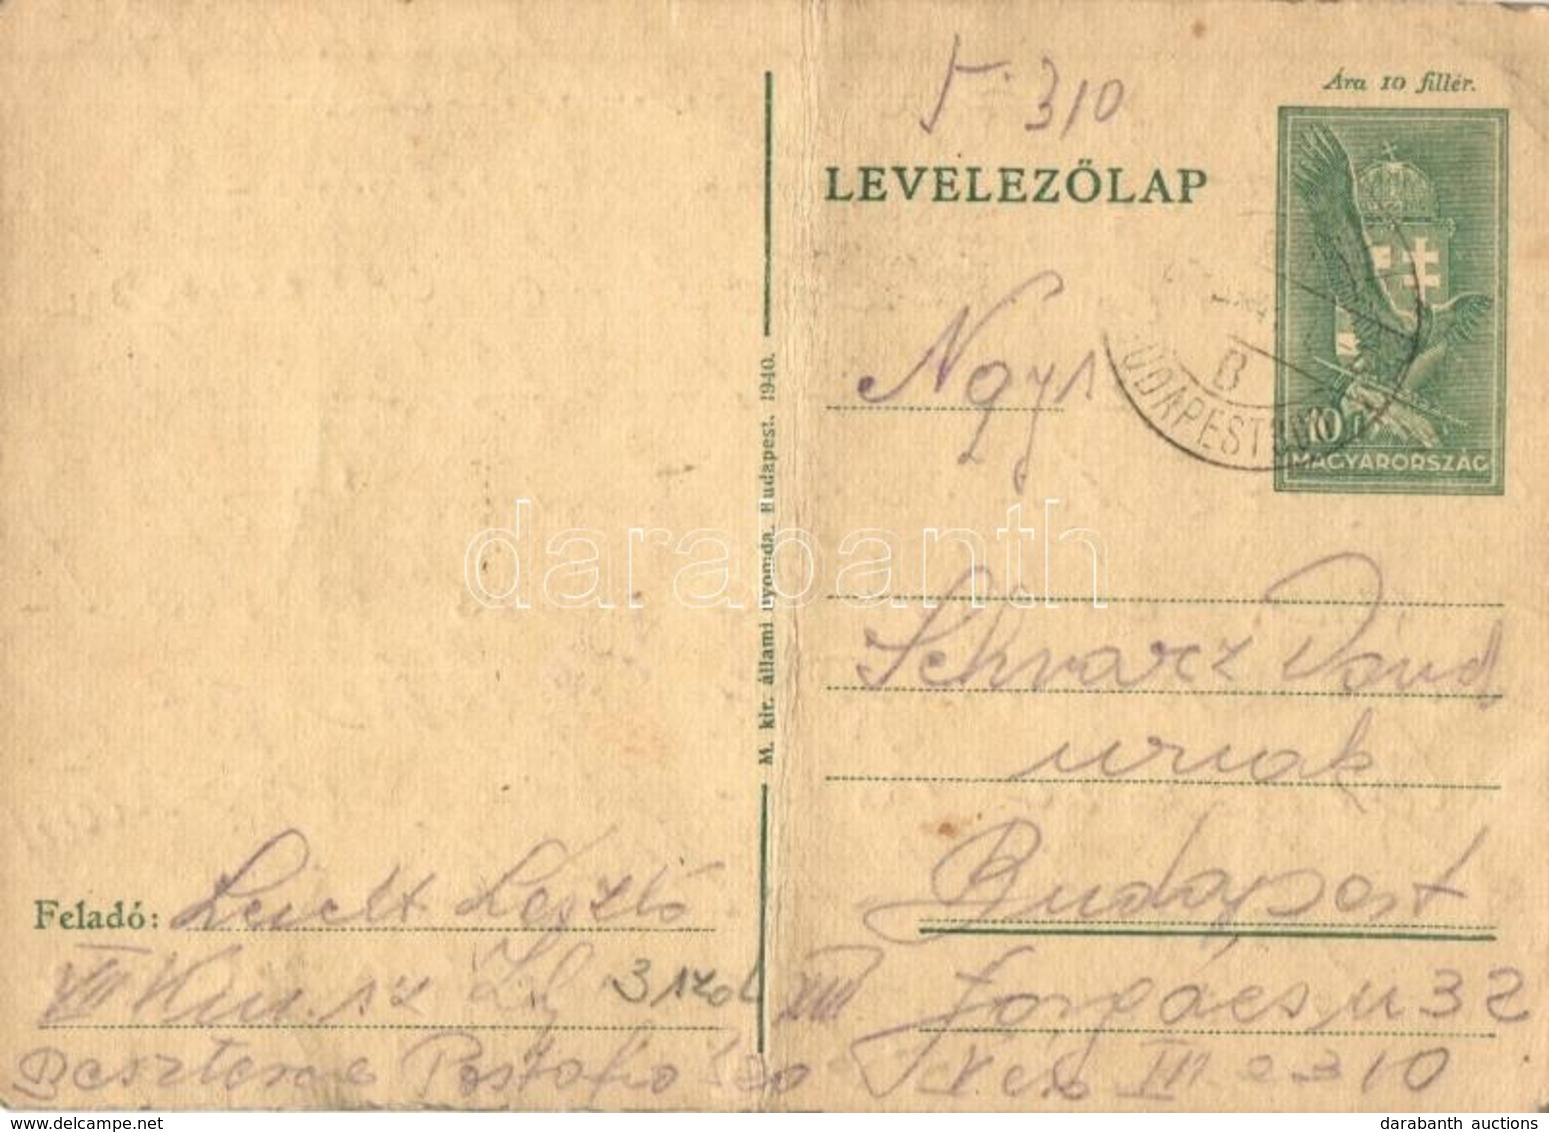 T3 1941 Leicht László Zsidó KMSZ (közérdekű Munkaszolgálatos) Levele Szüleinek A Besztercei Munkatáborból / WWII Letter  - Zonder Classificatie